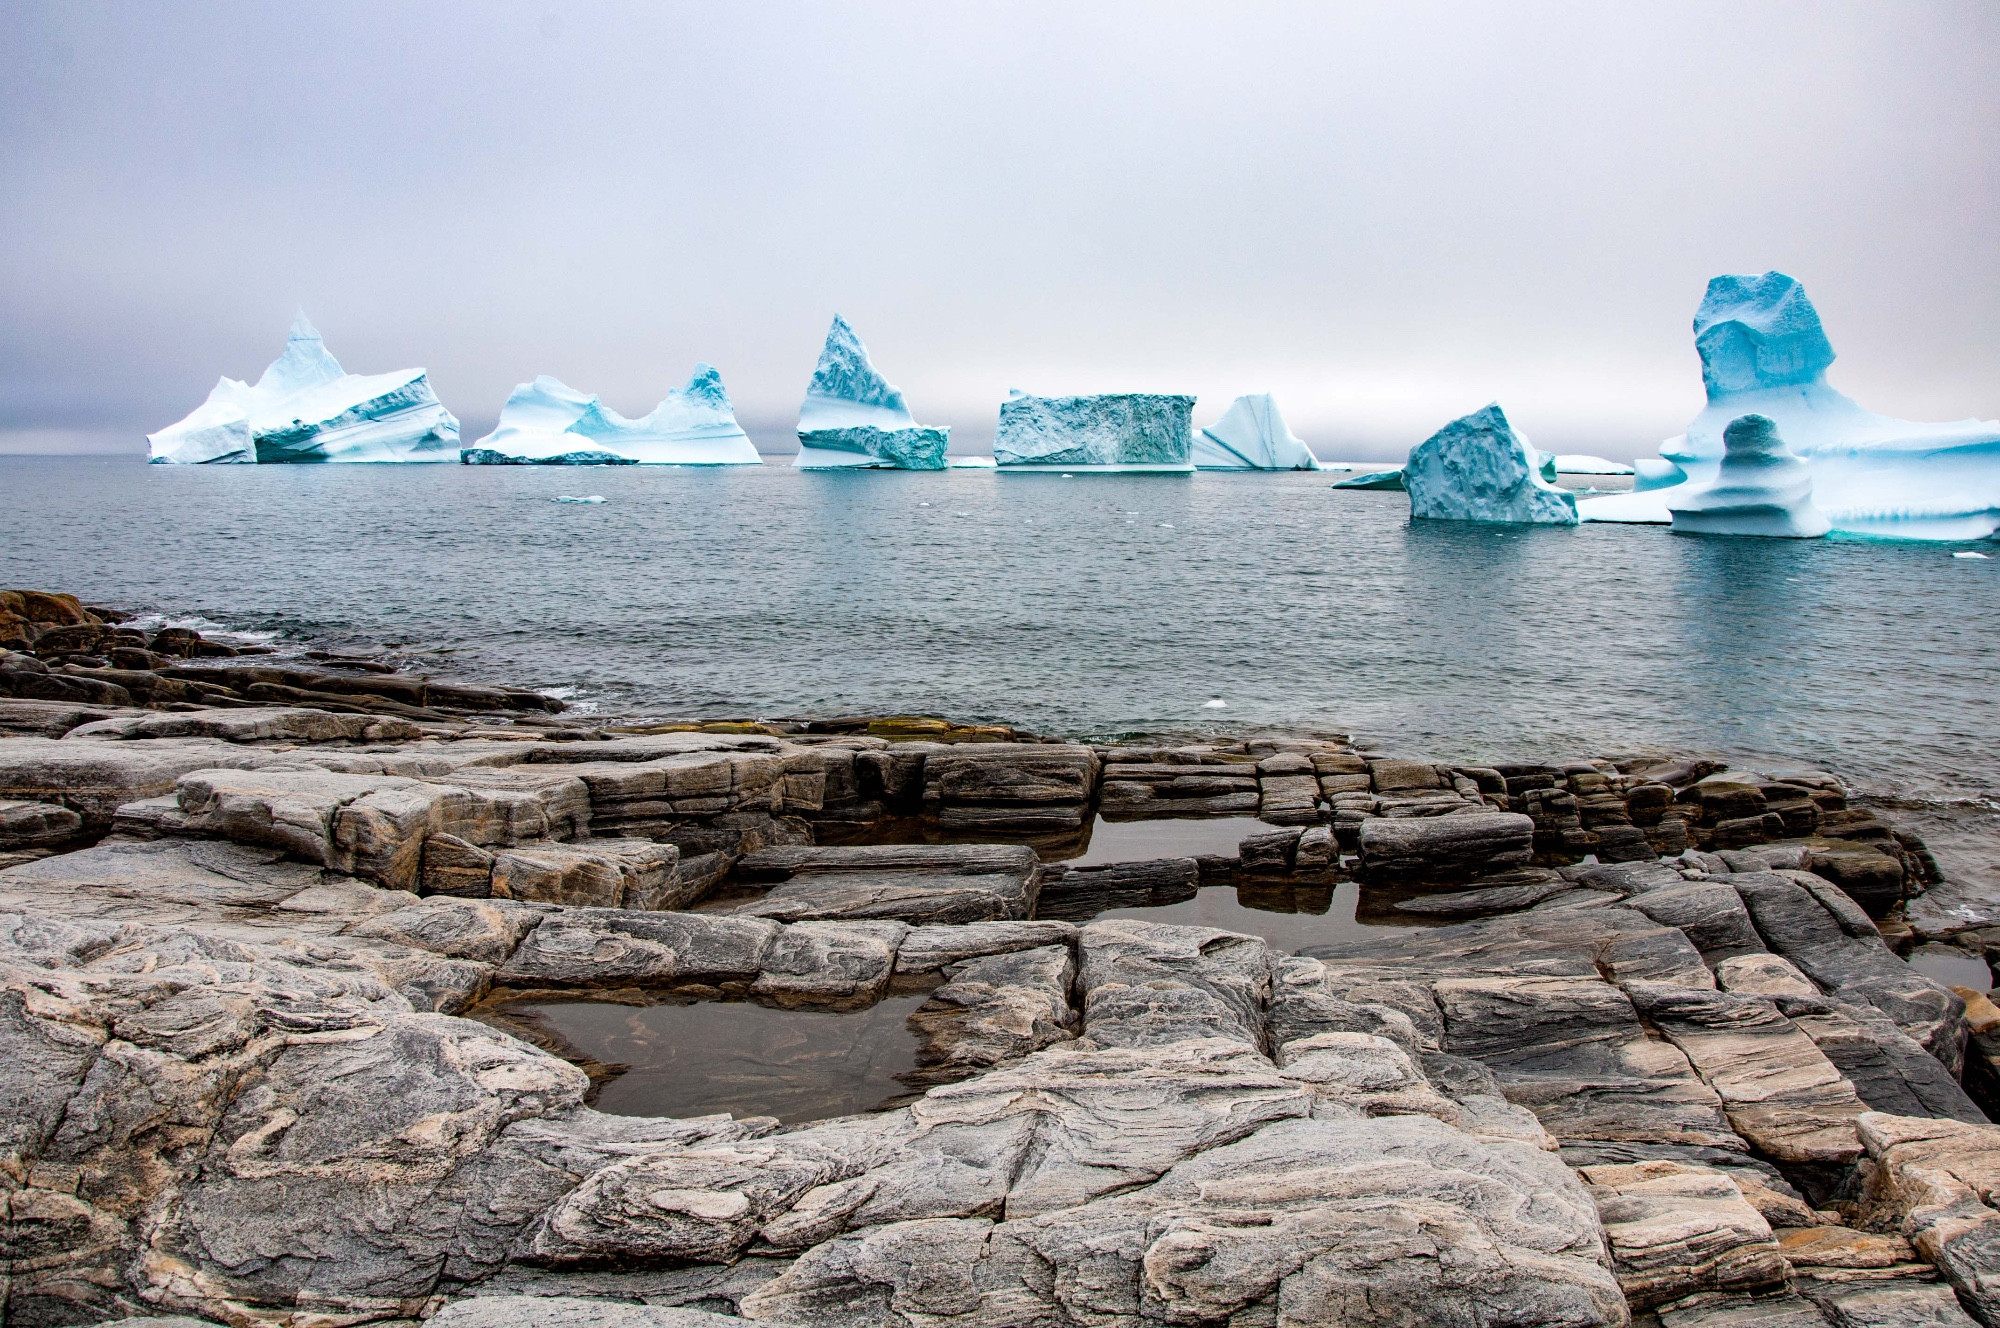 Icebergs at Qeqertarsuaq